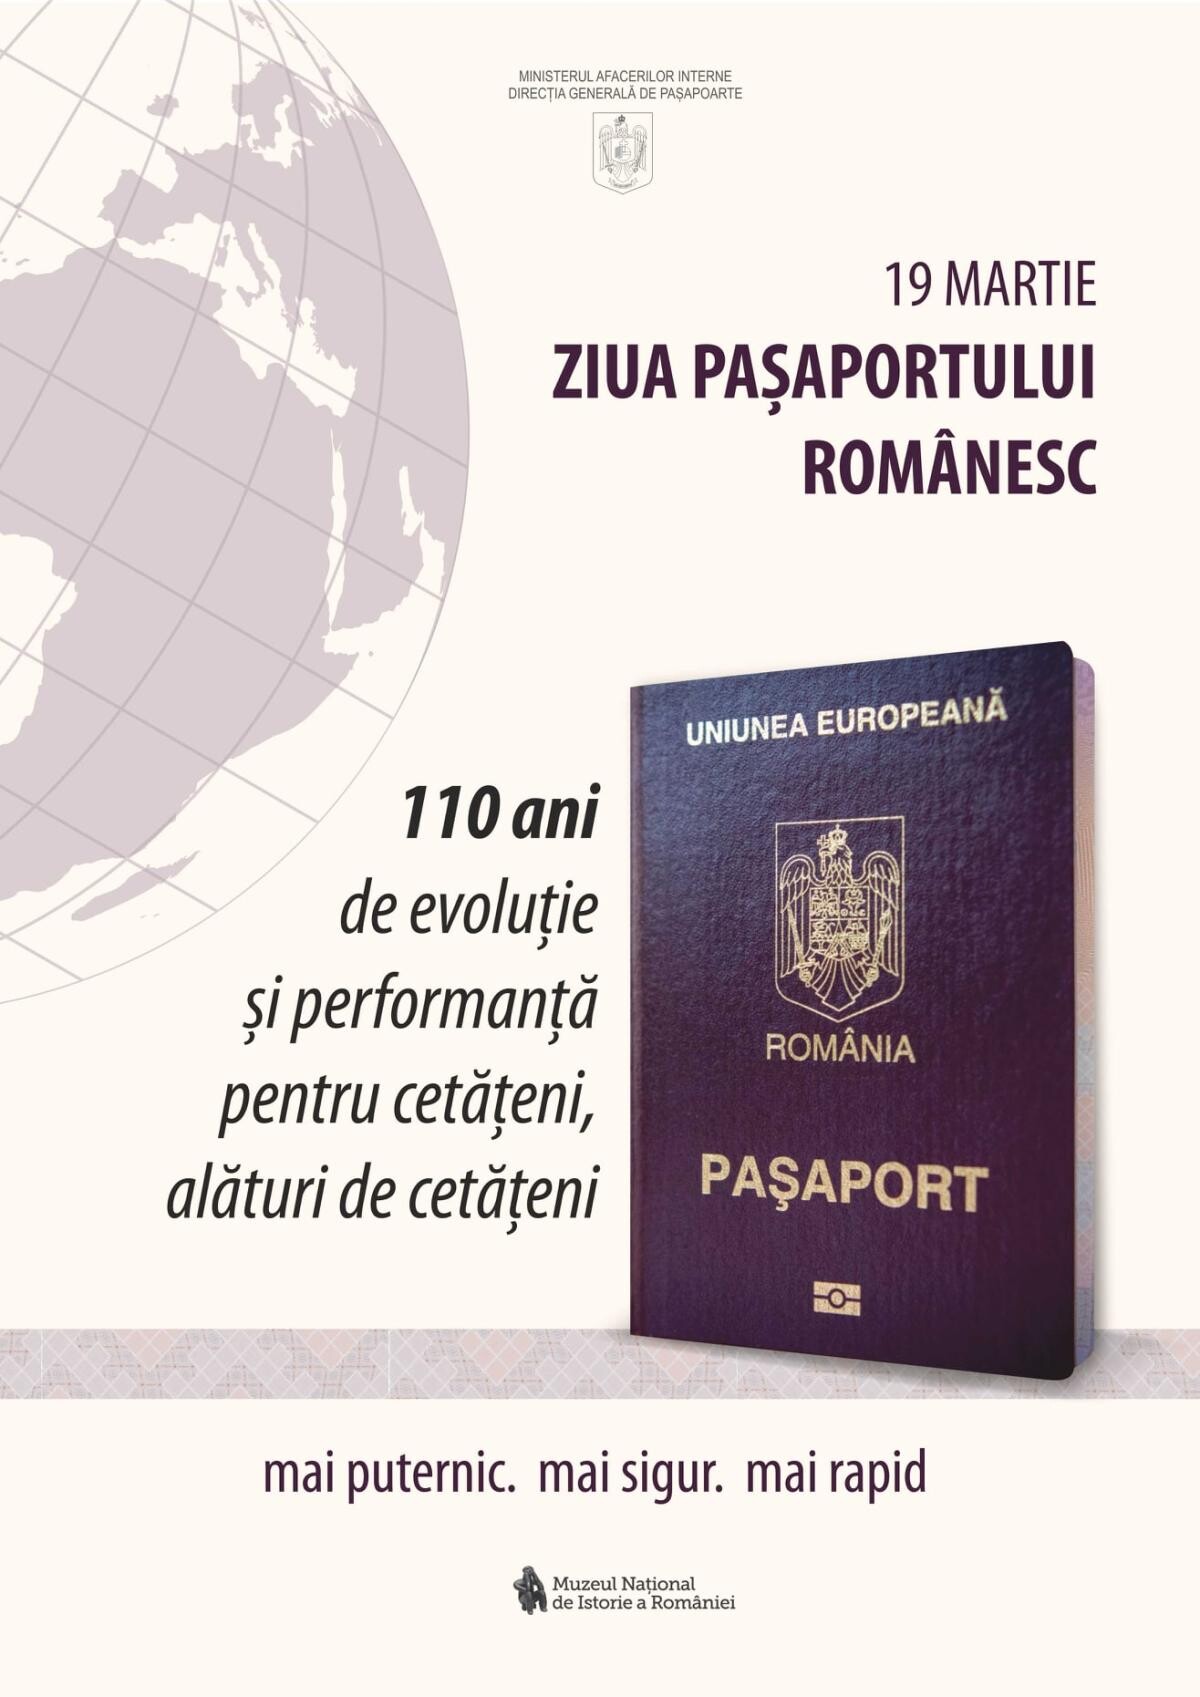 19 martie - Ziua paşaportului românesc (sursa foto: Muzeul Național de Istorie a României / Facebook)